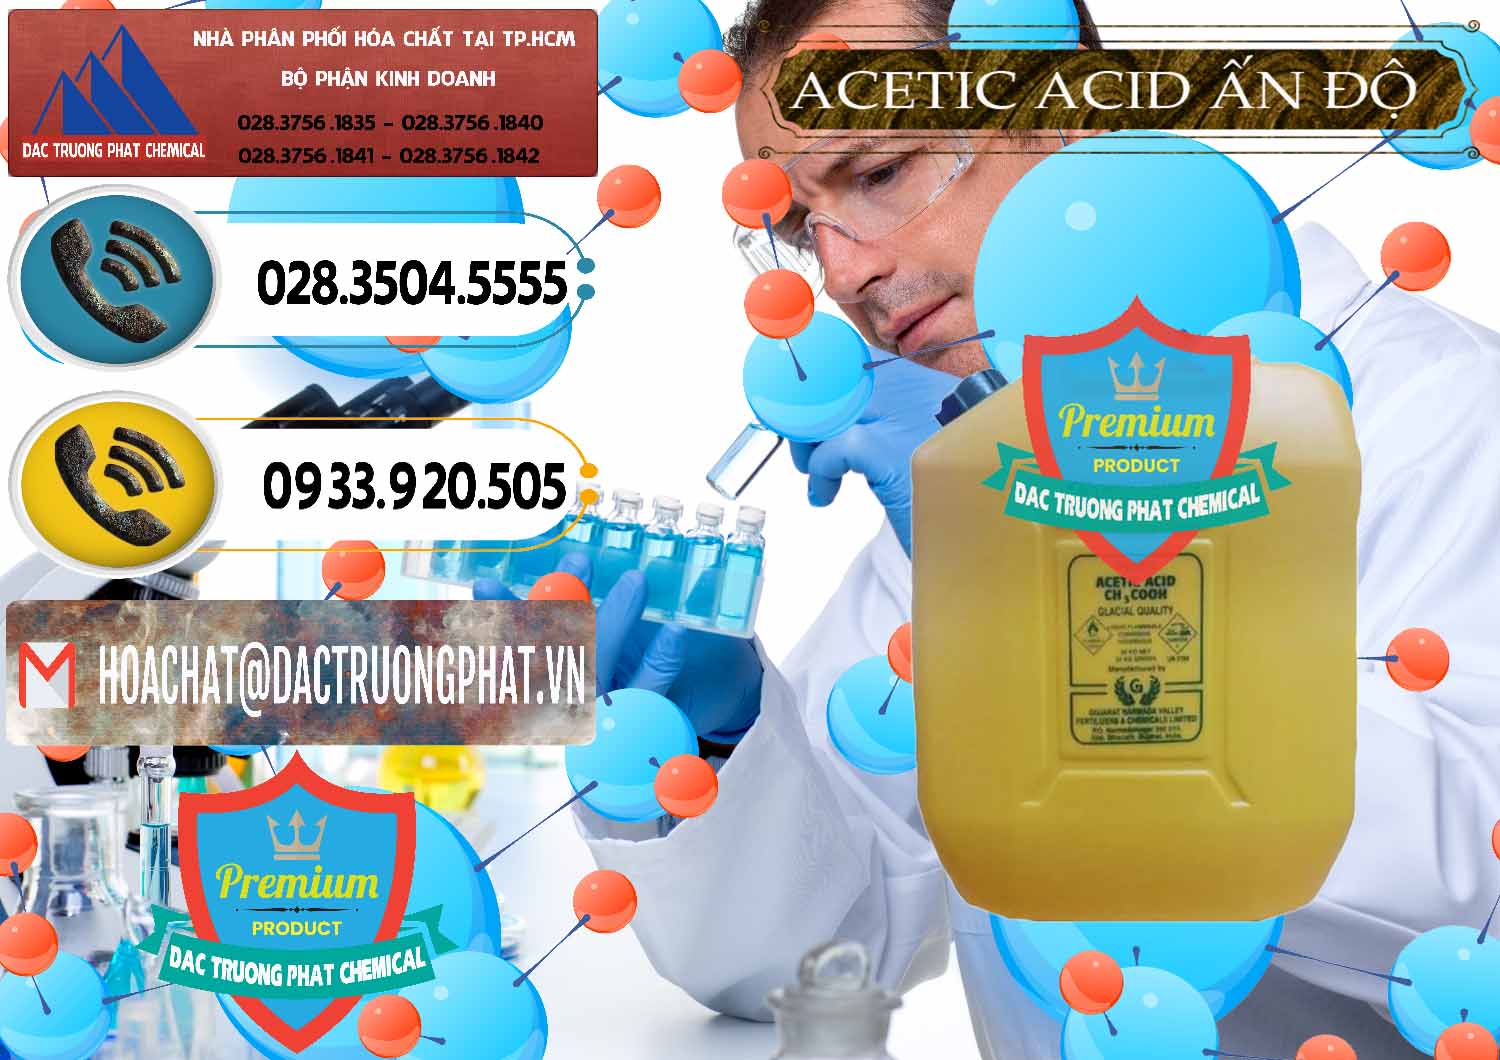 Đơn vị bán _ cung ứng Acetic Acid – Axit Acetic Ấn Độ India - 0359 - Cung cấp và bán hóa chất tại TP.HCM - hoachatdetnhuom.vn